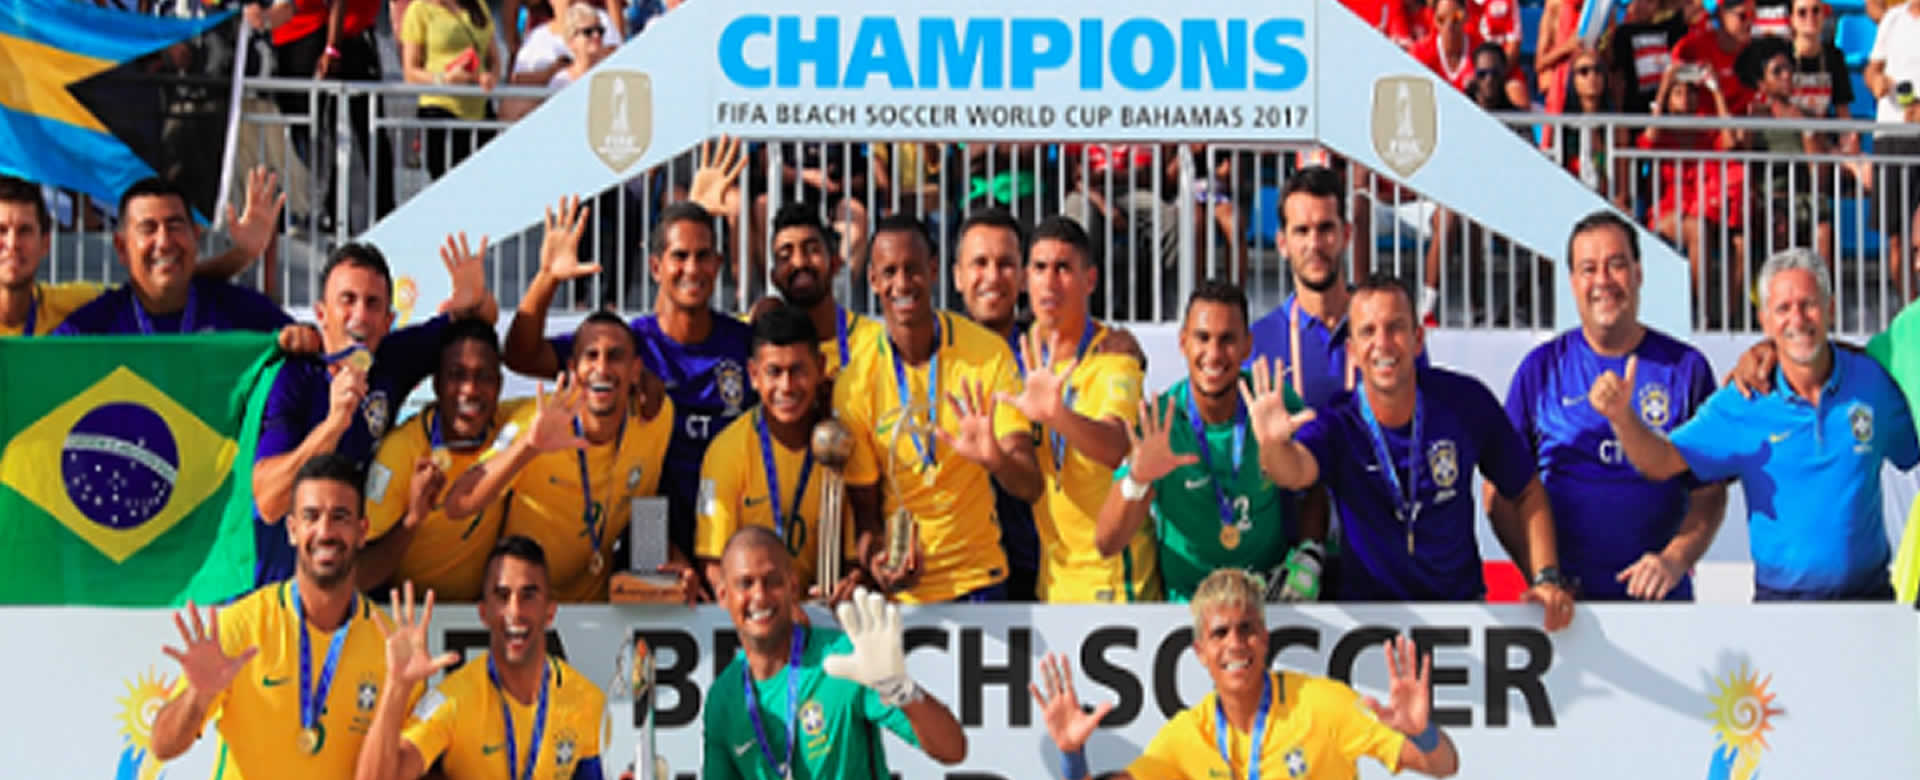 Brasil y Portugal son los nuevos reyes del fútbol playa